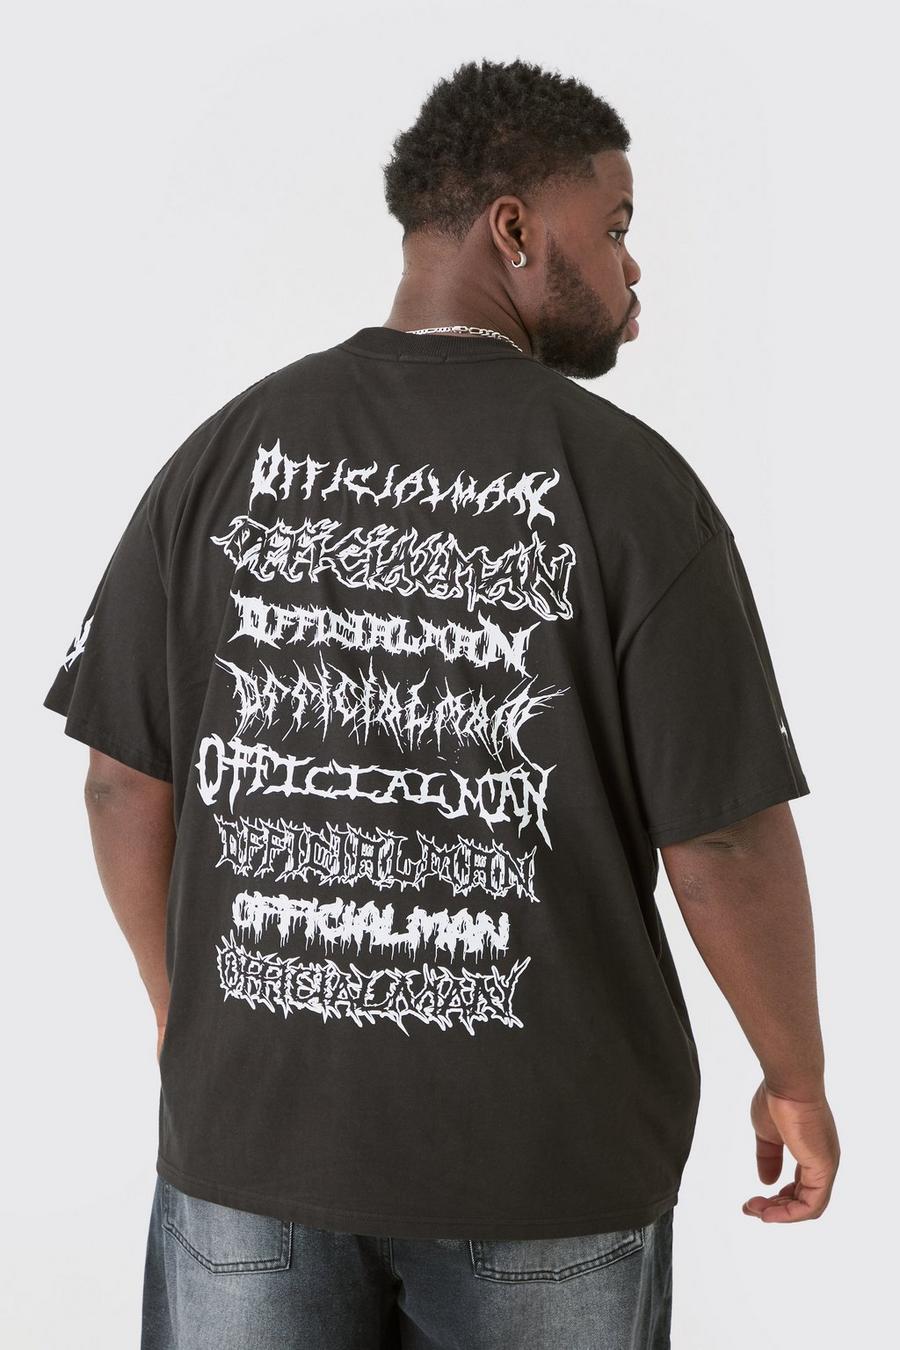 Plus Official Man Tour T-Shirt, Black